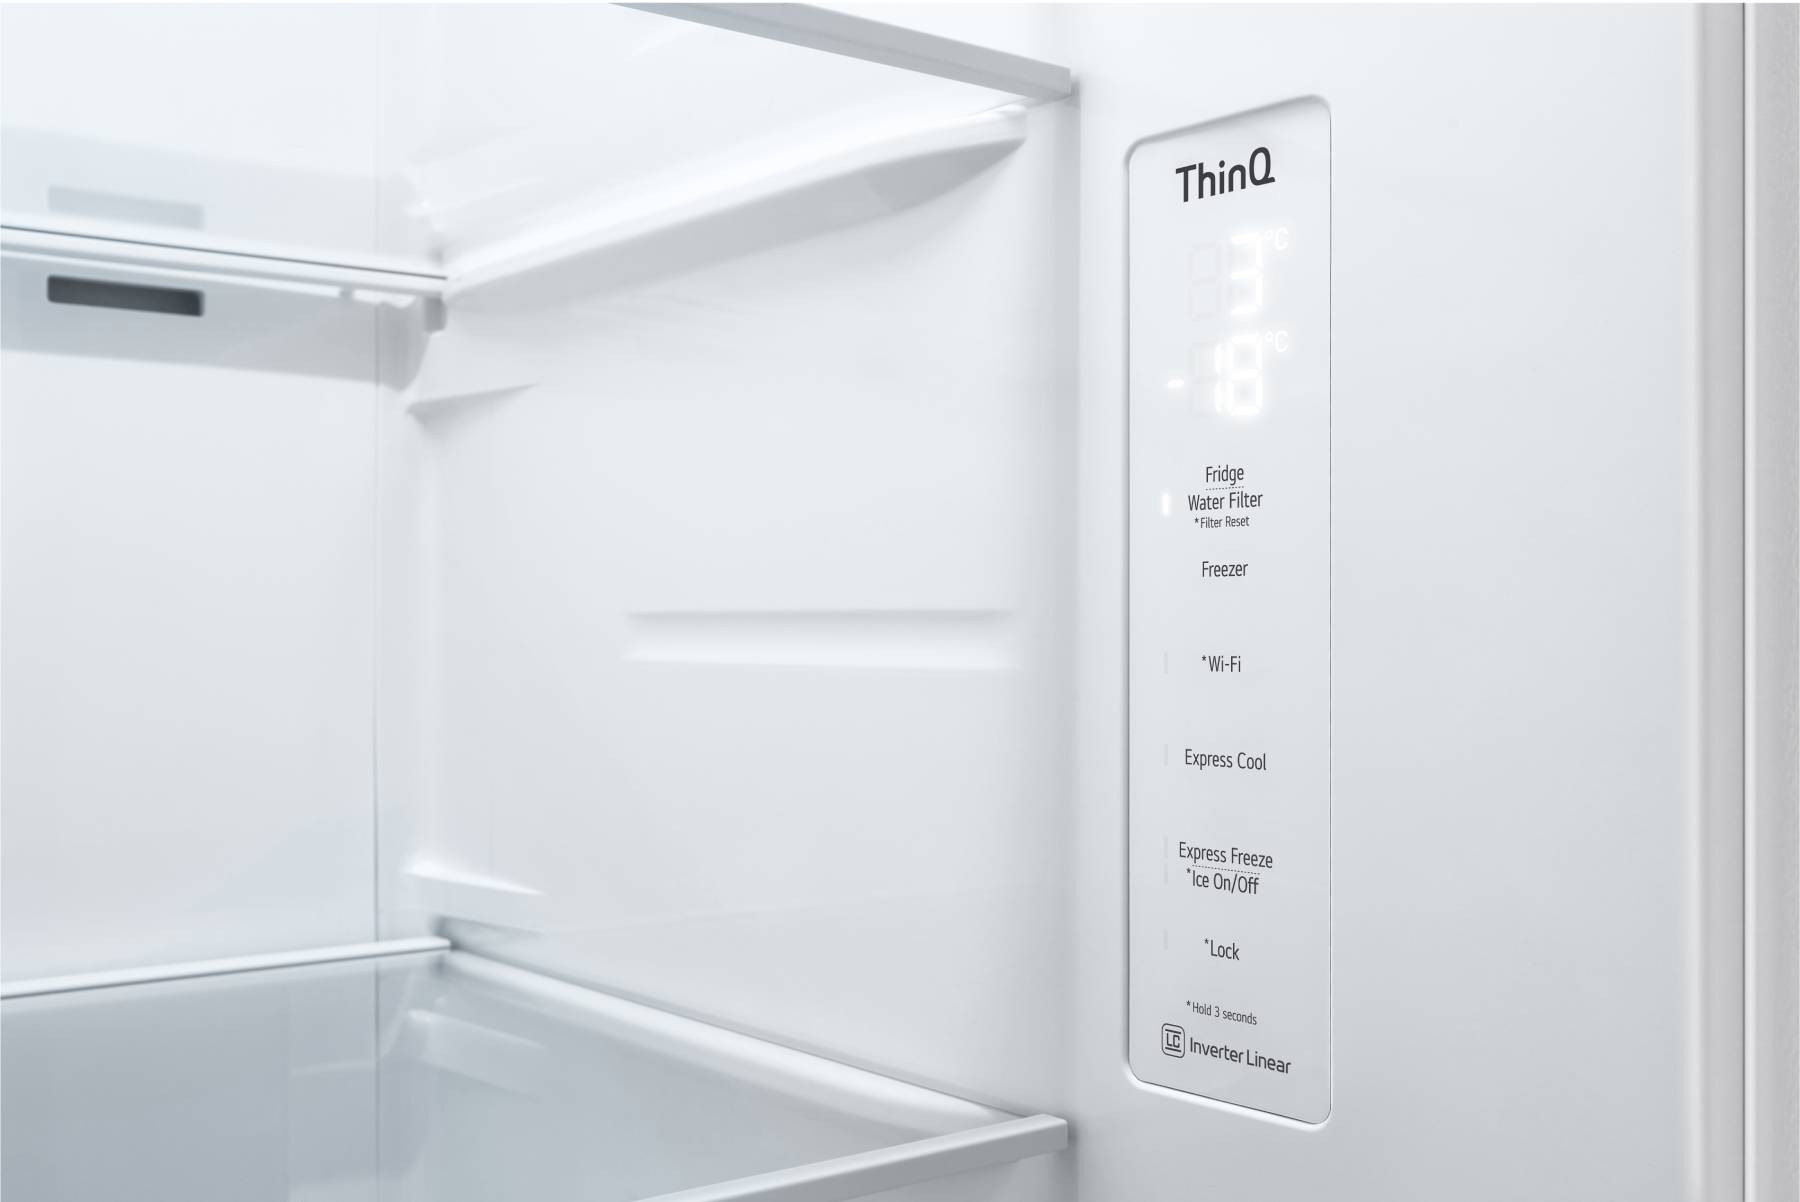 LG Réfrigérateur américain Smart Diagnosis Door Cooling+ 635L Blanc - GSLV70SWTF